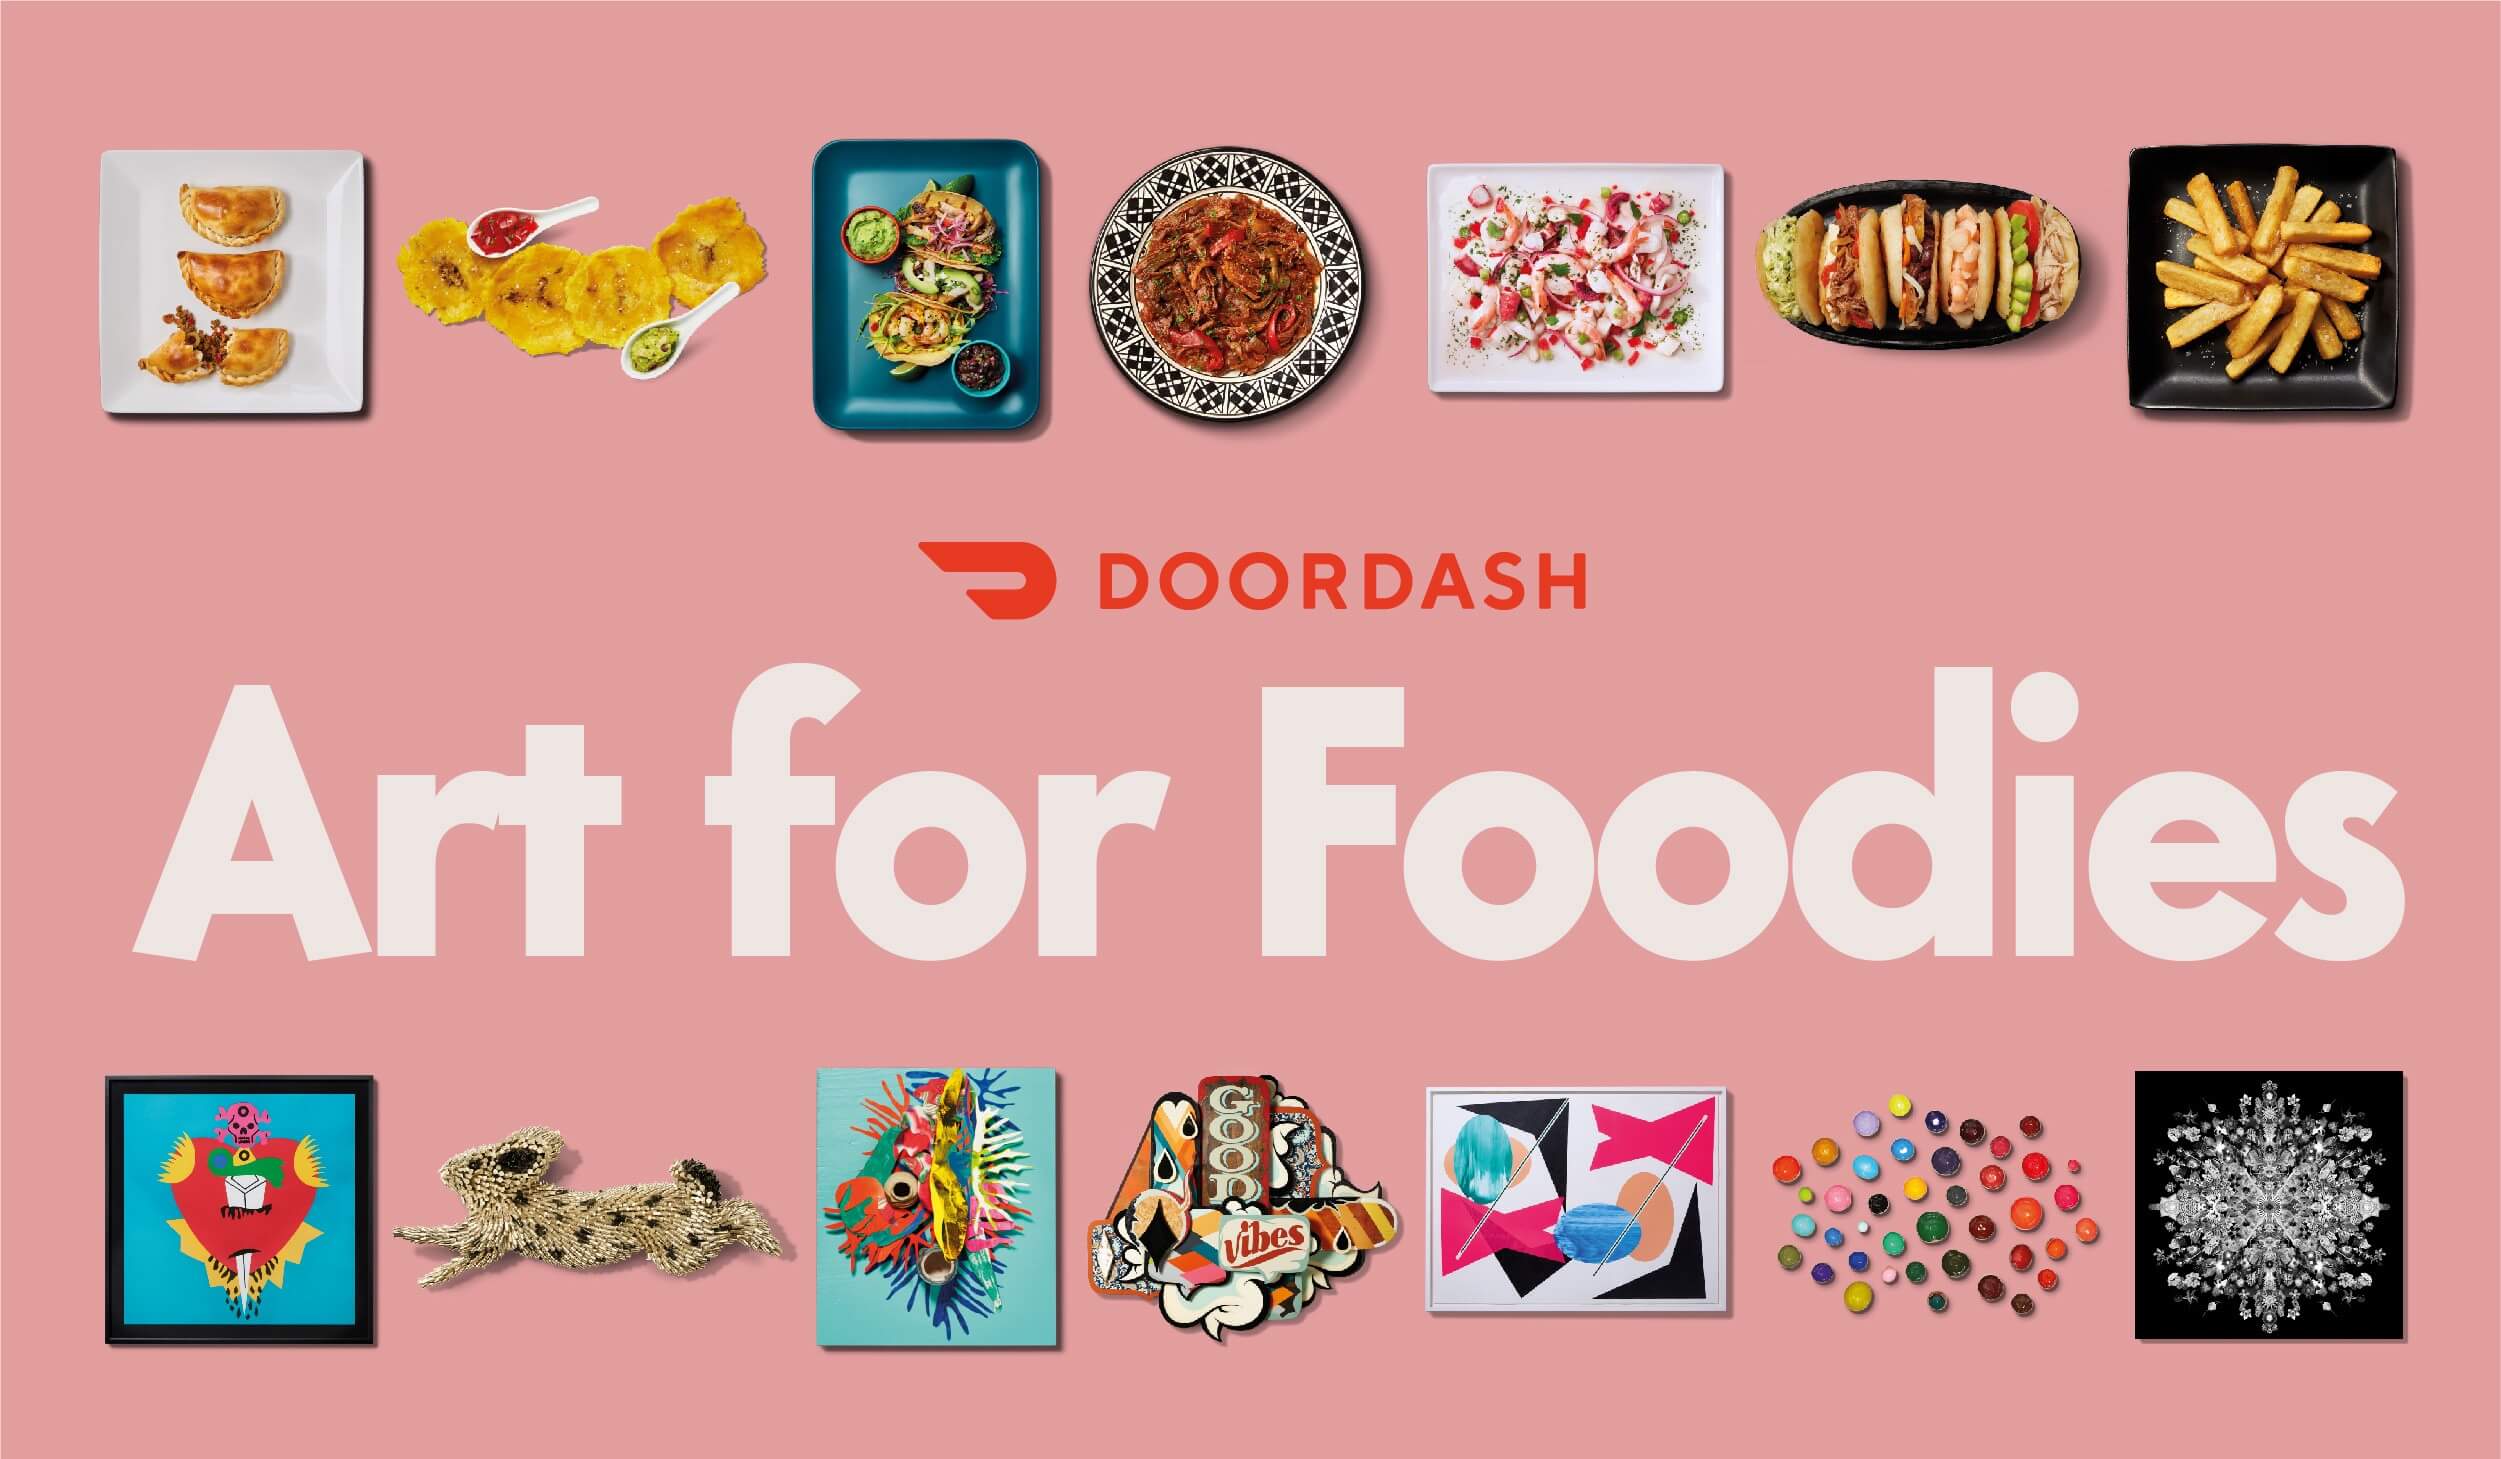 Art For Foodies by Doordash